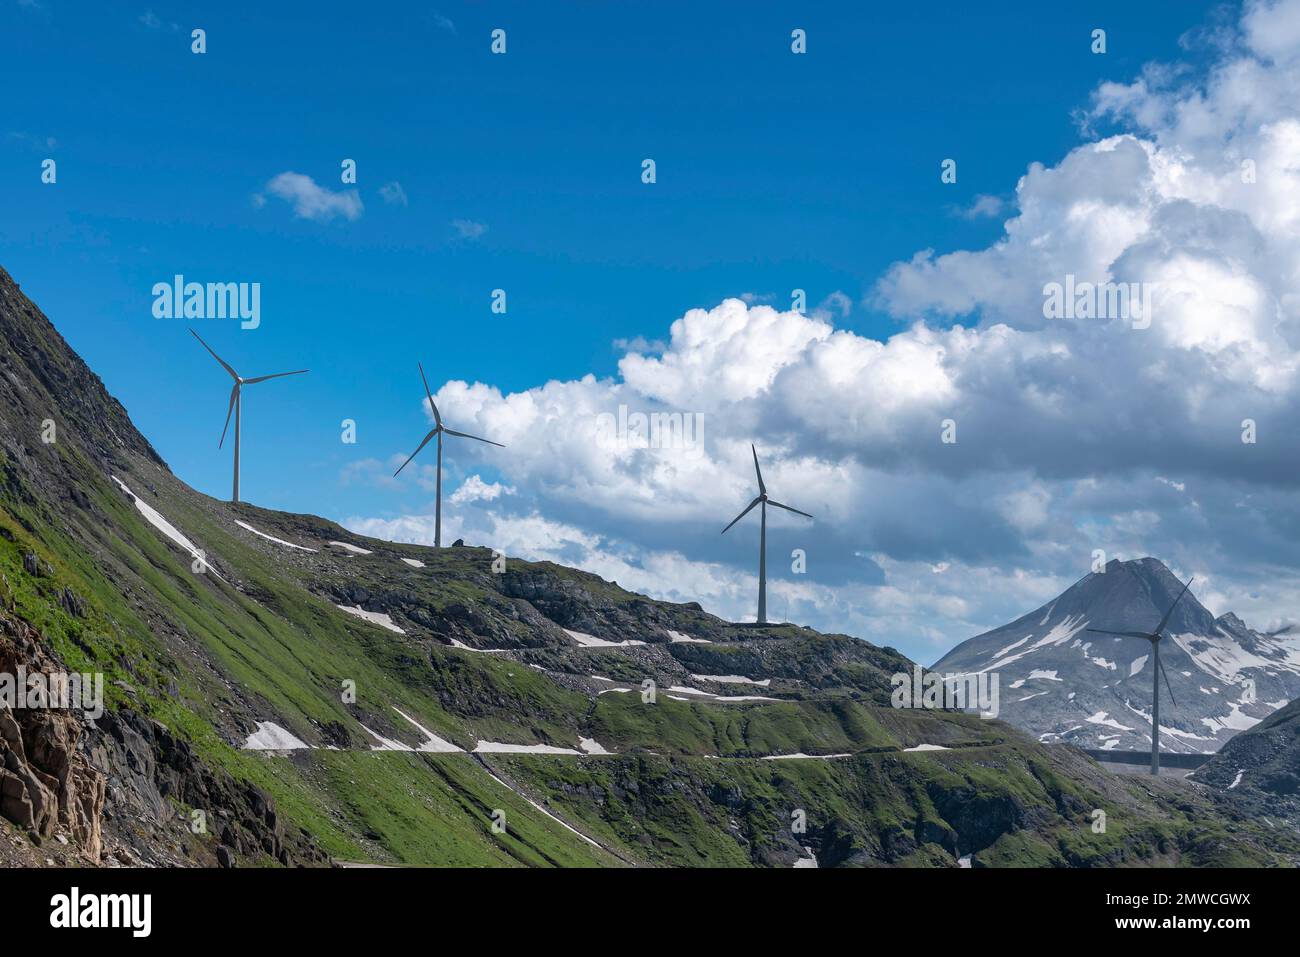 Wind turbine below Lake Gri near the Nufenen Pass, Ulrichen, Valais, Switzerland Stock Photo